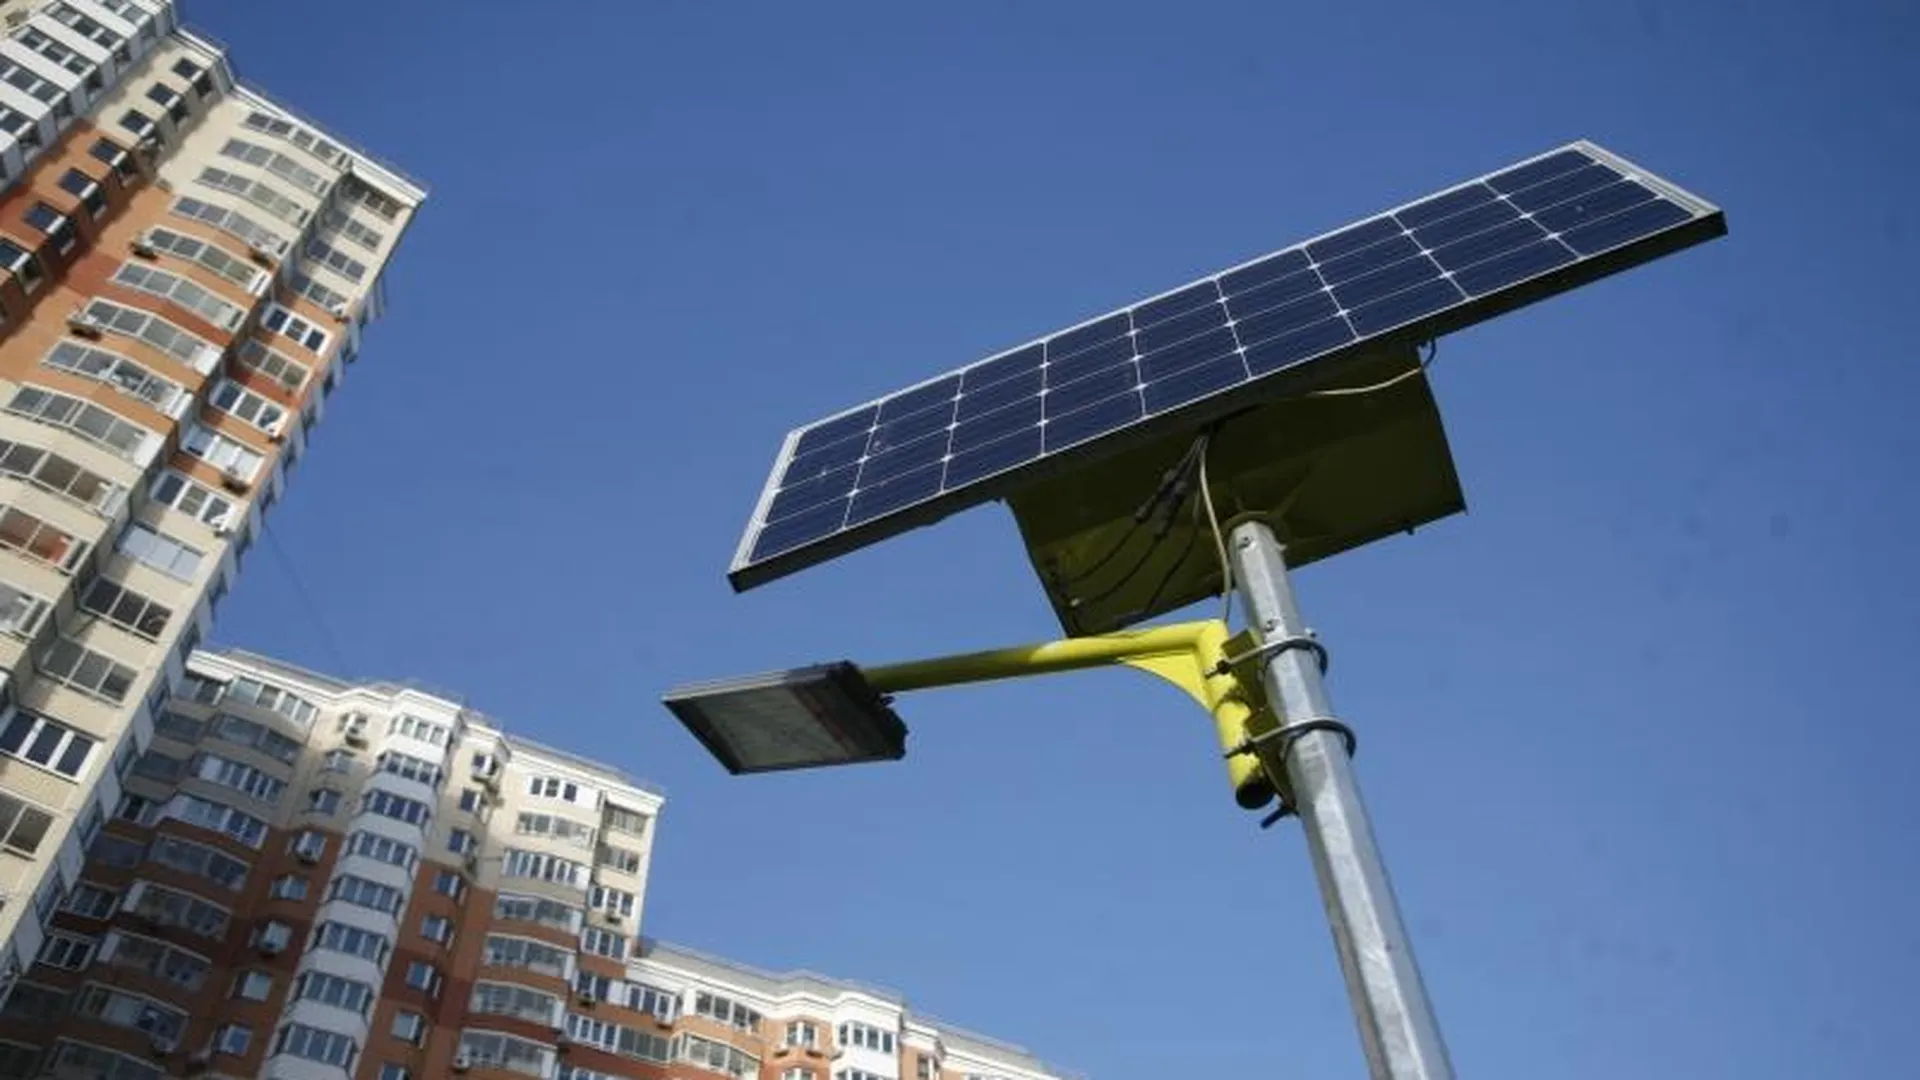 Эксперты рассказали о плюсах и минусах солнечных батарей для дома